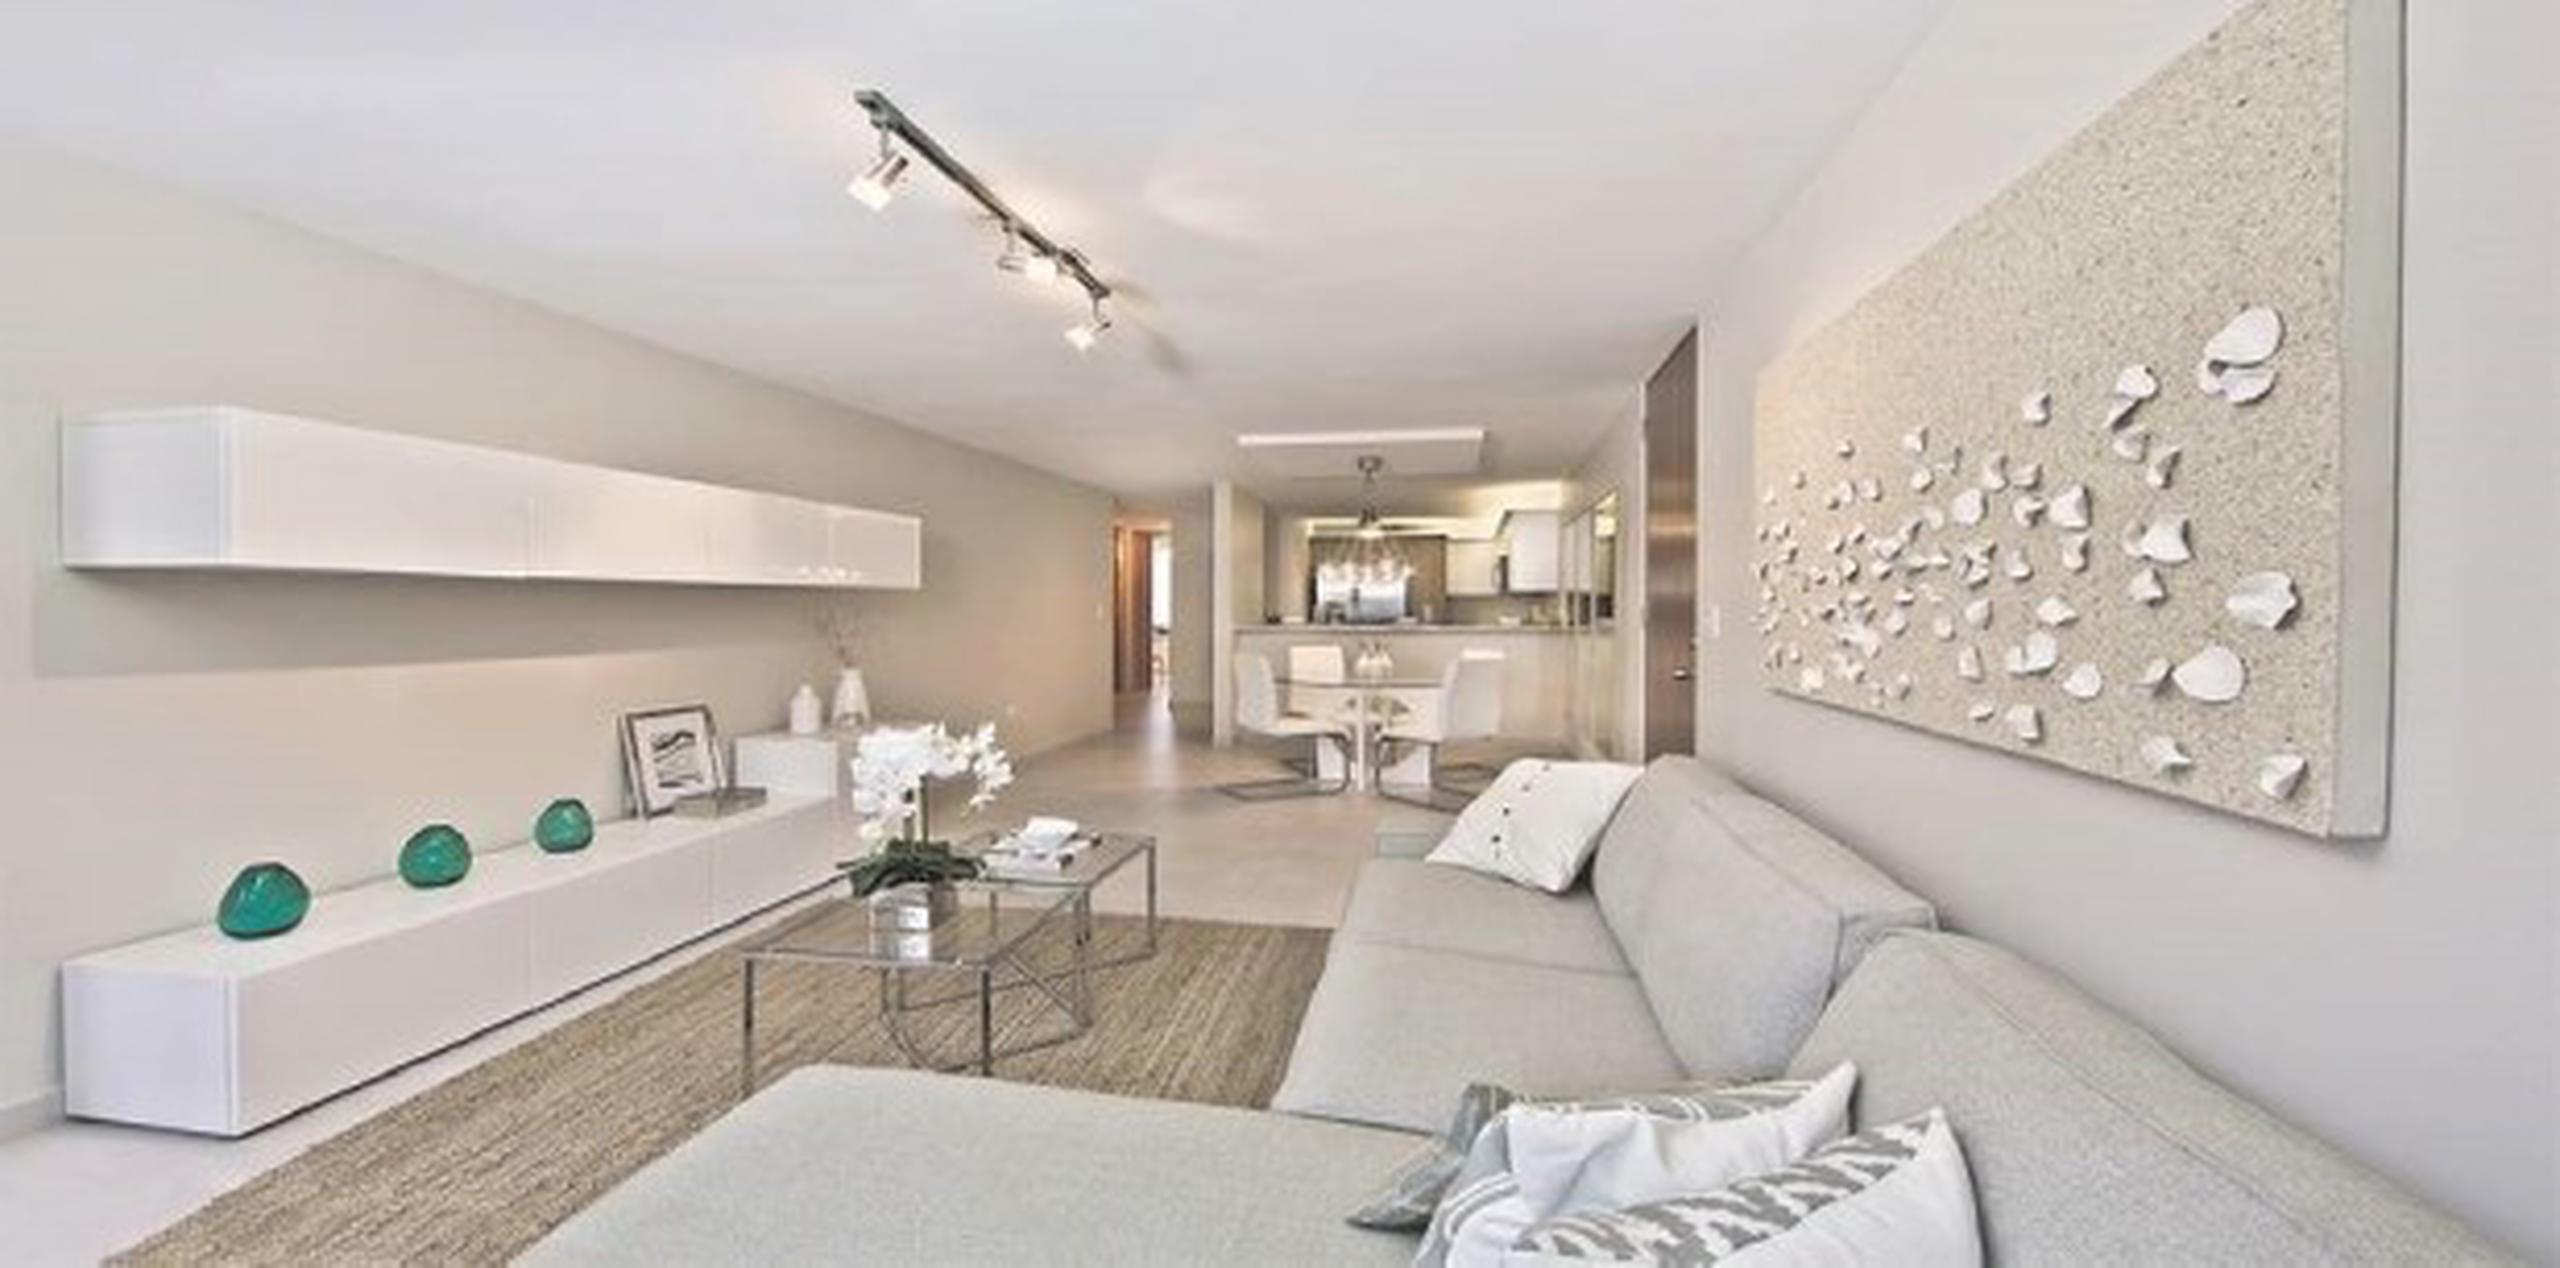 En Parque 228  puedes adquirir un elegante apartamento de tres dormitorios, dos baños, con dos estacionamientos, desde tan solo $148,000.